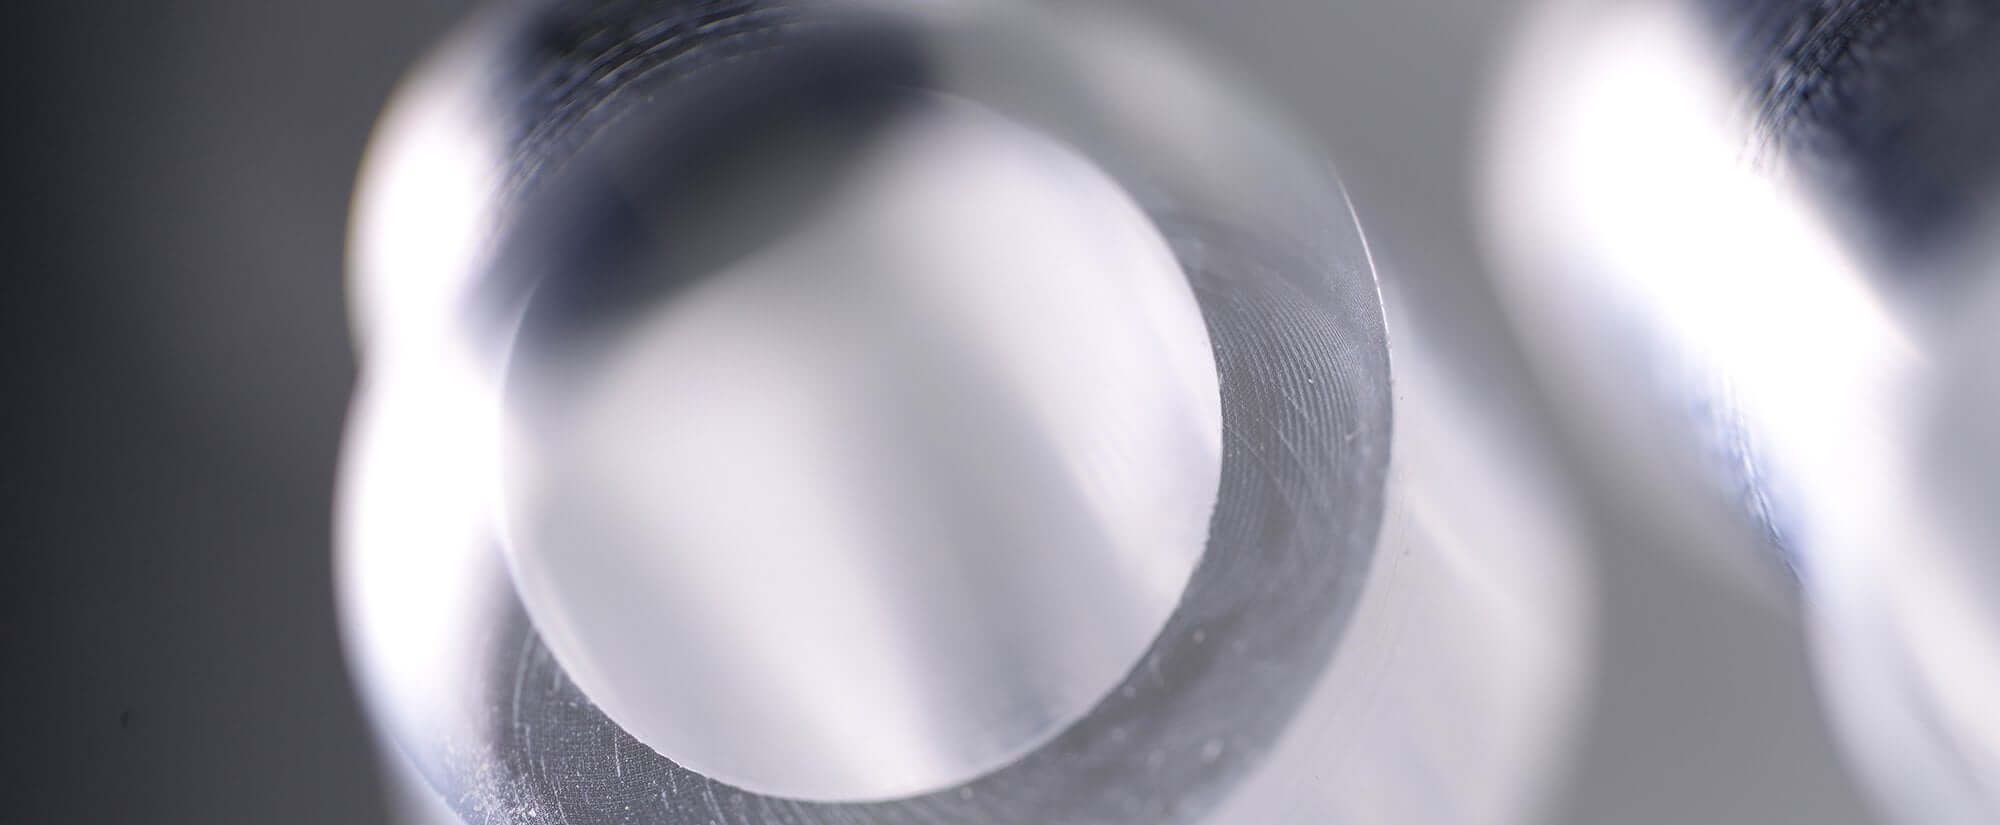 Plaque de base acryline en verre acrylique avec des alésages profonds pièces techniques forées profondément percés accessoires moulus de base partie acrylic production